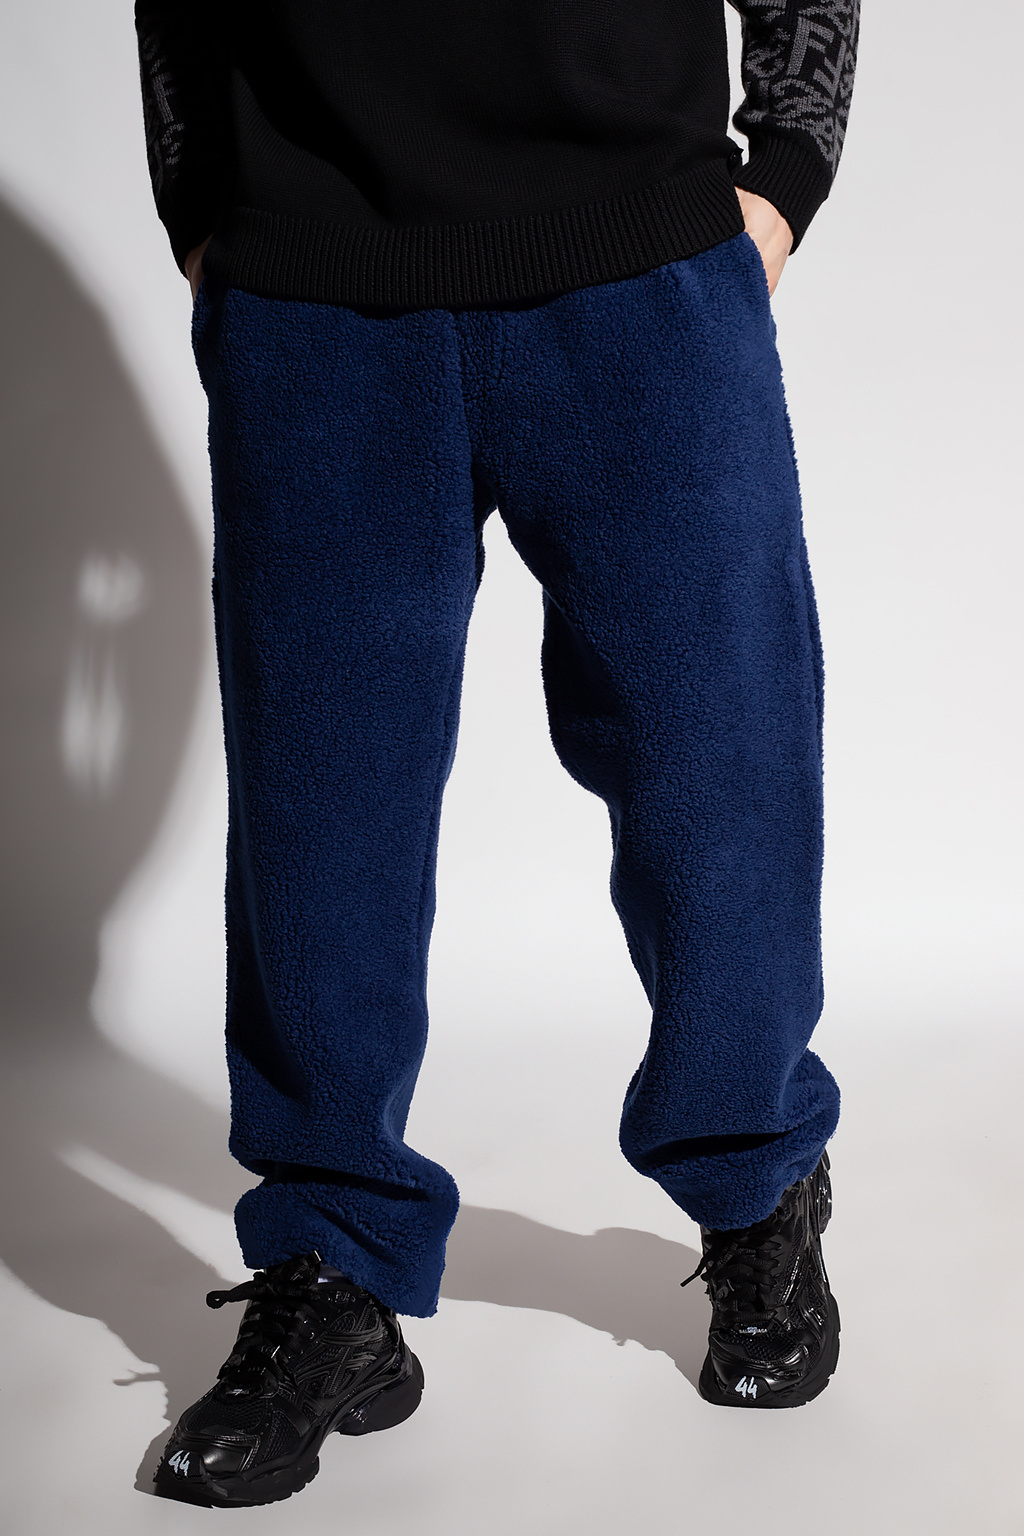 Fendi Poplin trousers with teddy effect